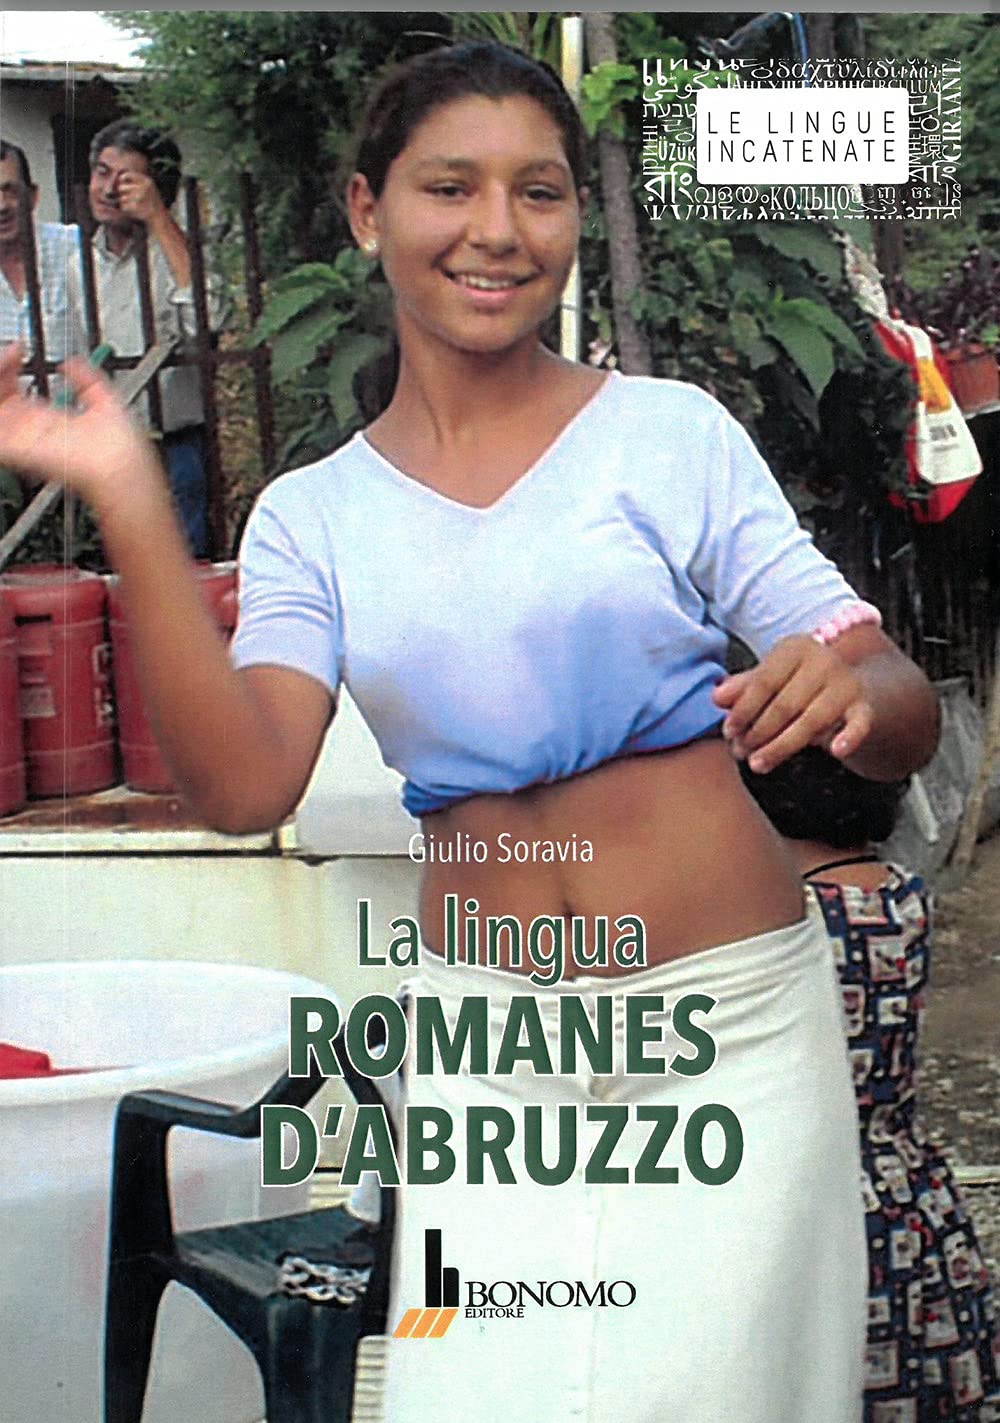 Libri Giulio Soravia - La Lingua Romanes D'abruzzo NUOVO SIGILLATO, EDIZIONE DEL 01/09/2019 SUBITO DISPONIBILE